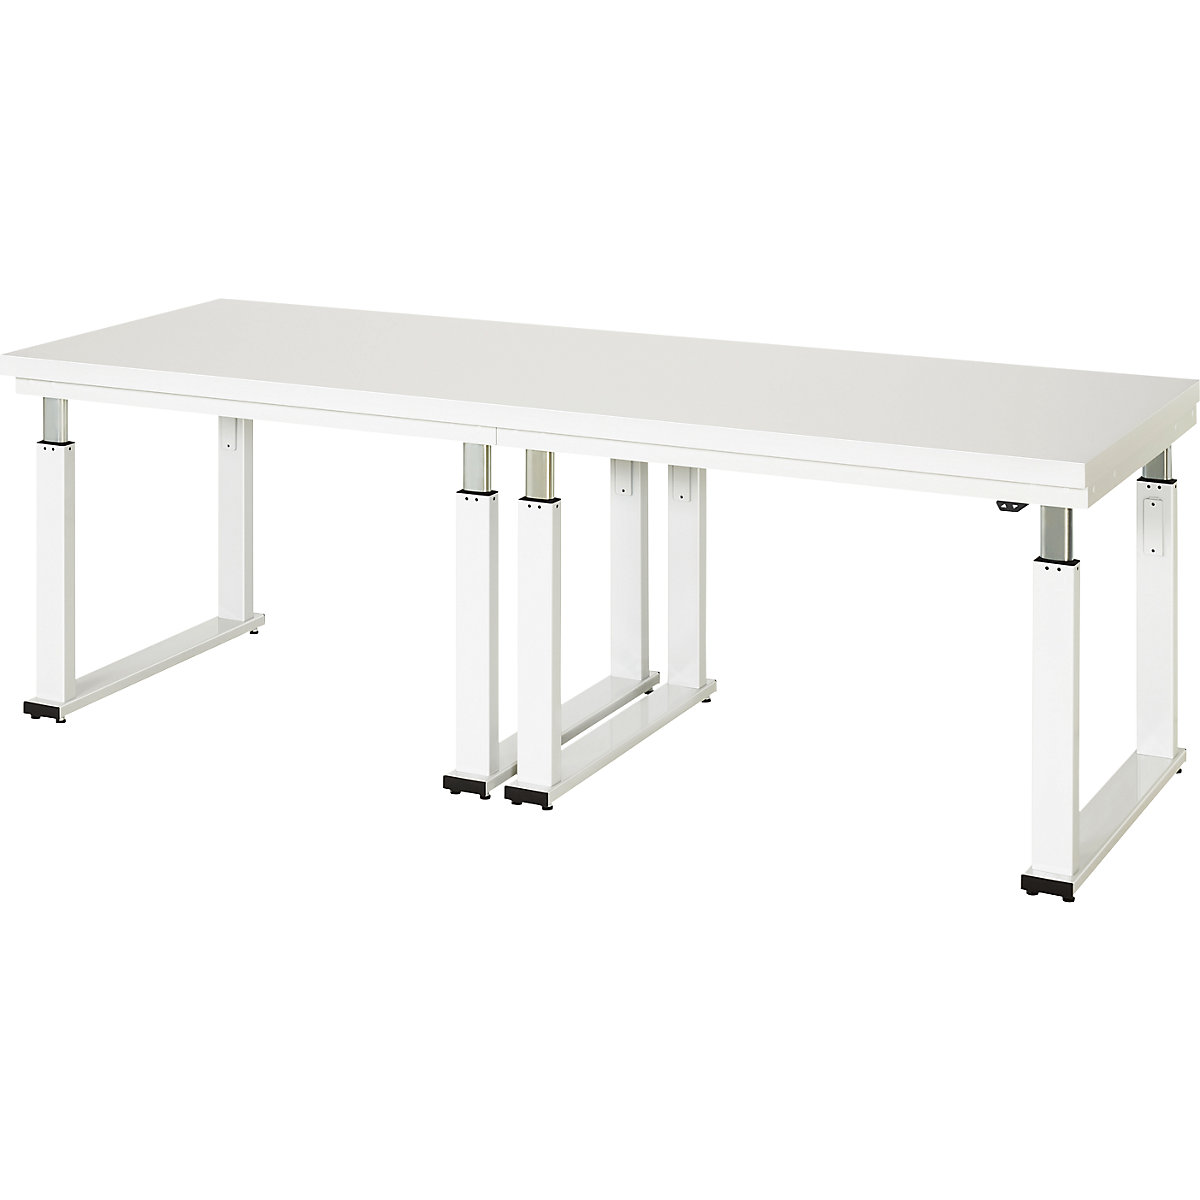 Psací stůl s elektrickým přestavováním výšky – RAU, deska z tvrdého laminátu, nosnost 600 kg, š x h 2500 x 900 mm-12